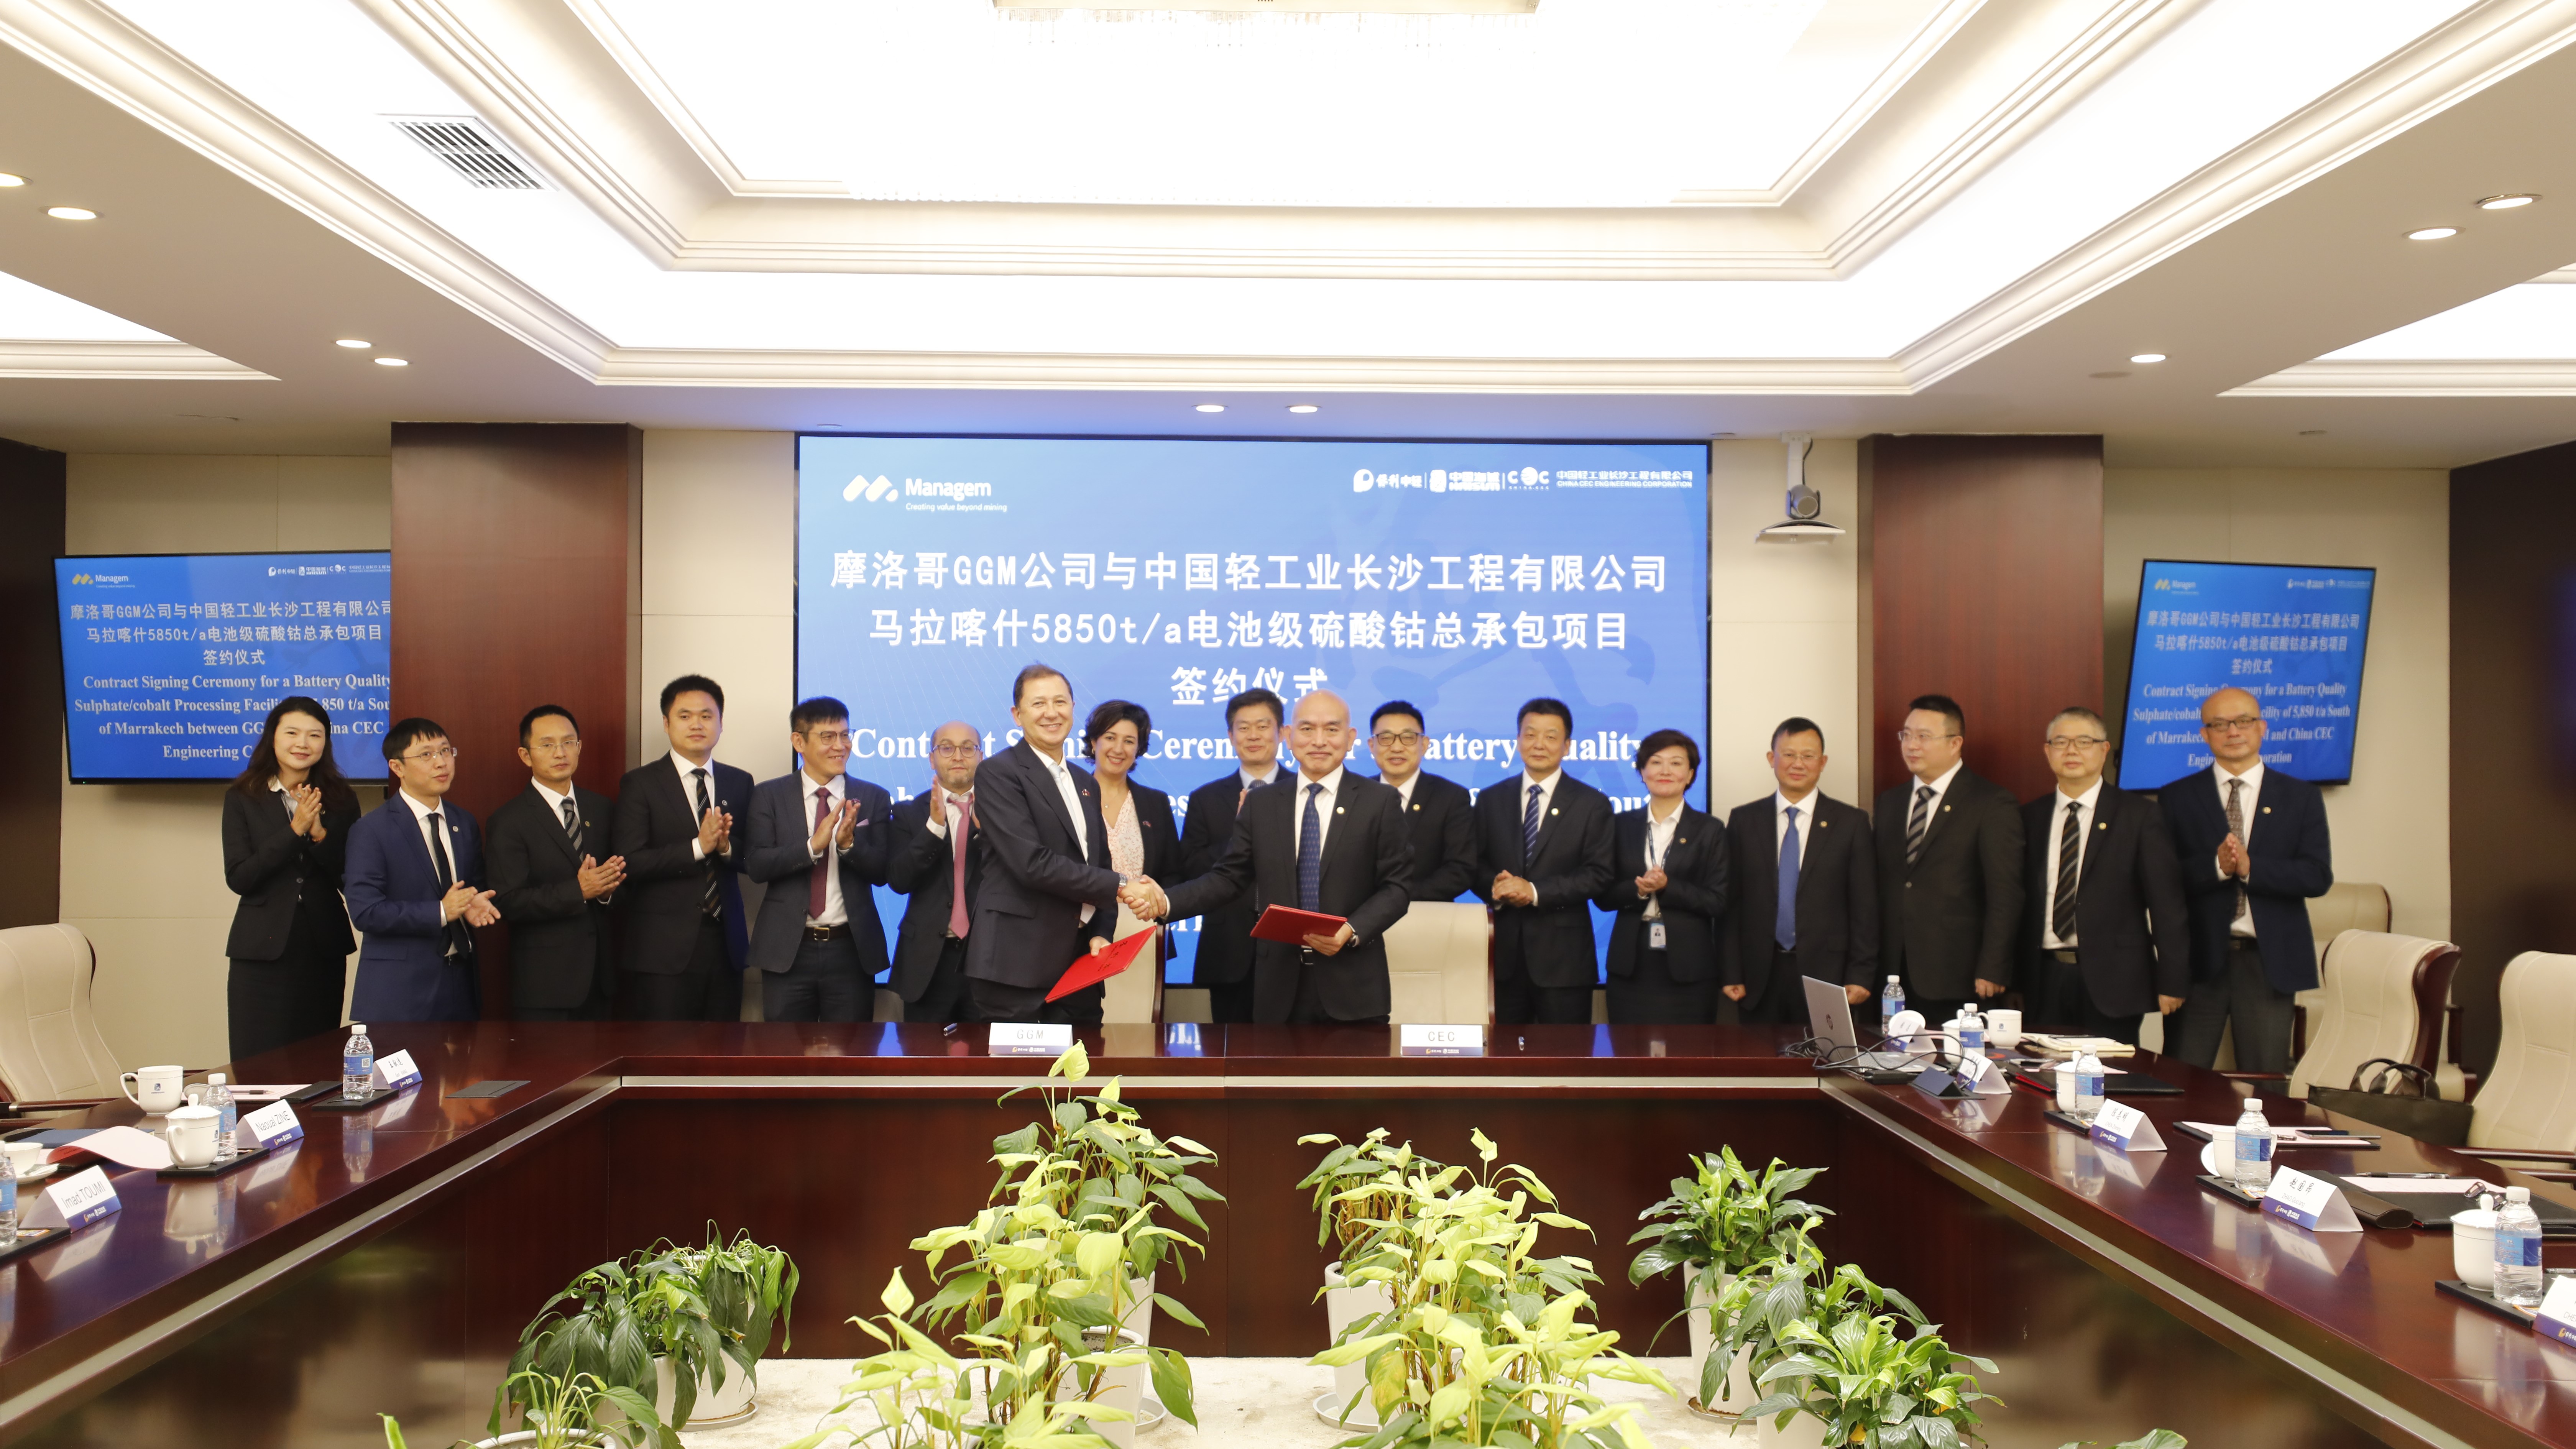 高質量共建“一帶一路” | 中國海誠與摩洛哥馬拉錦集團簽署戰略合作協議及電池級硫酸鈷總承包項目